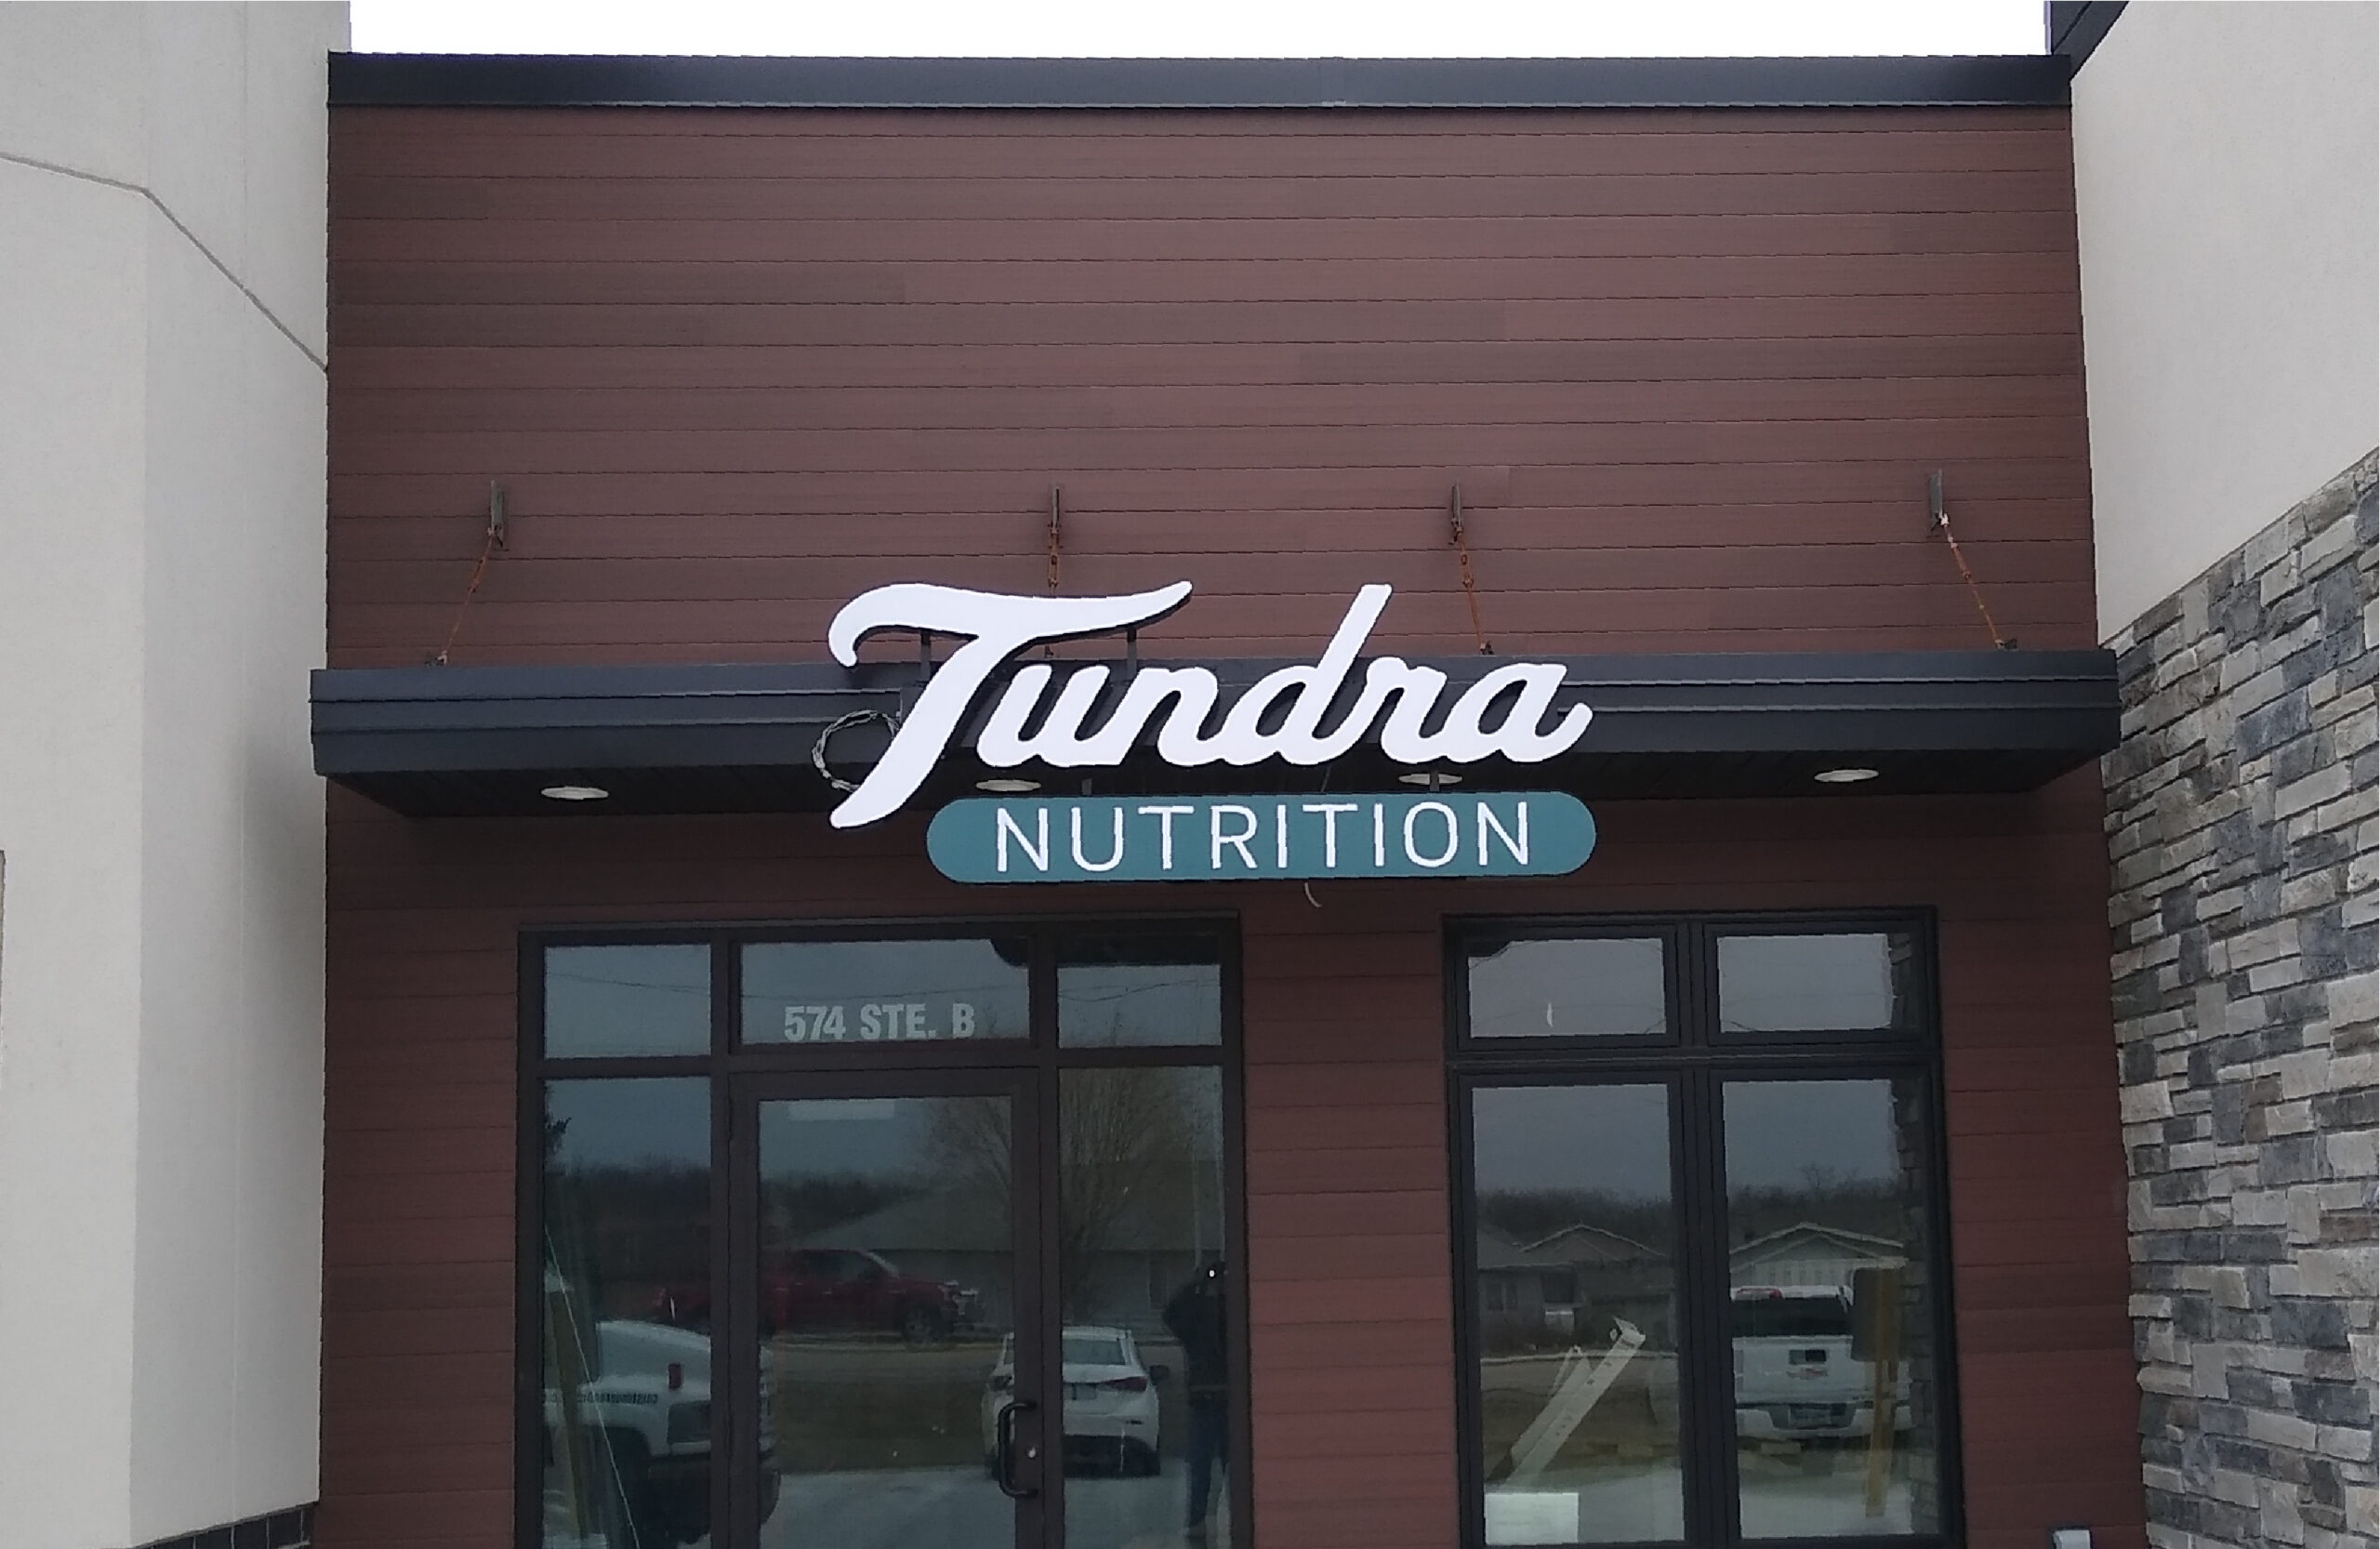 Tundra Nutrition